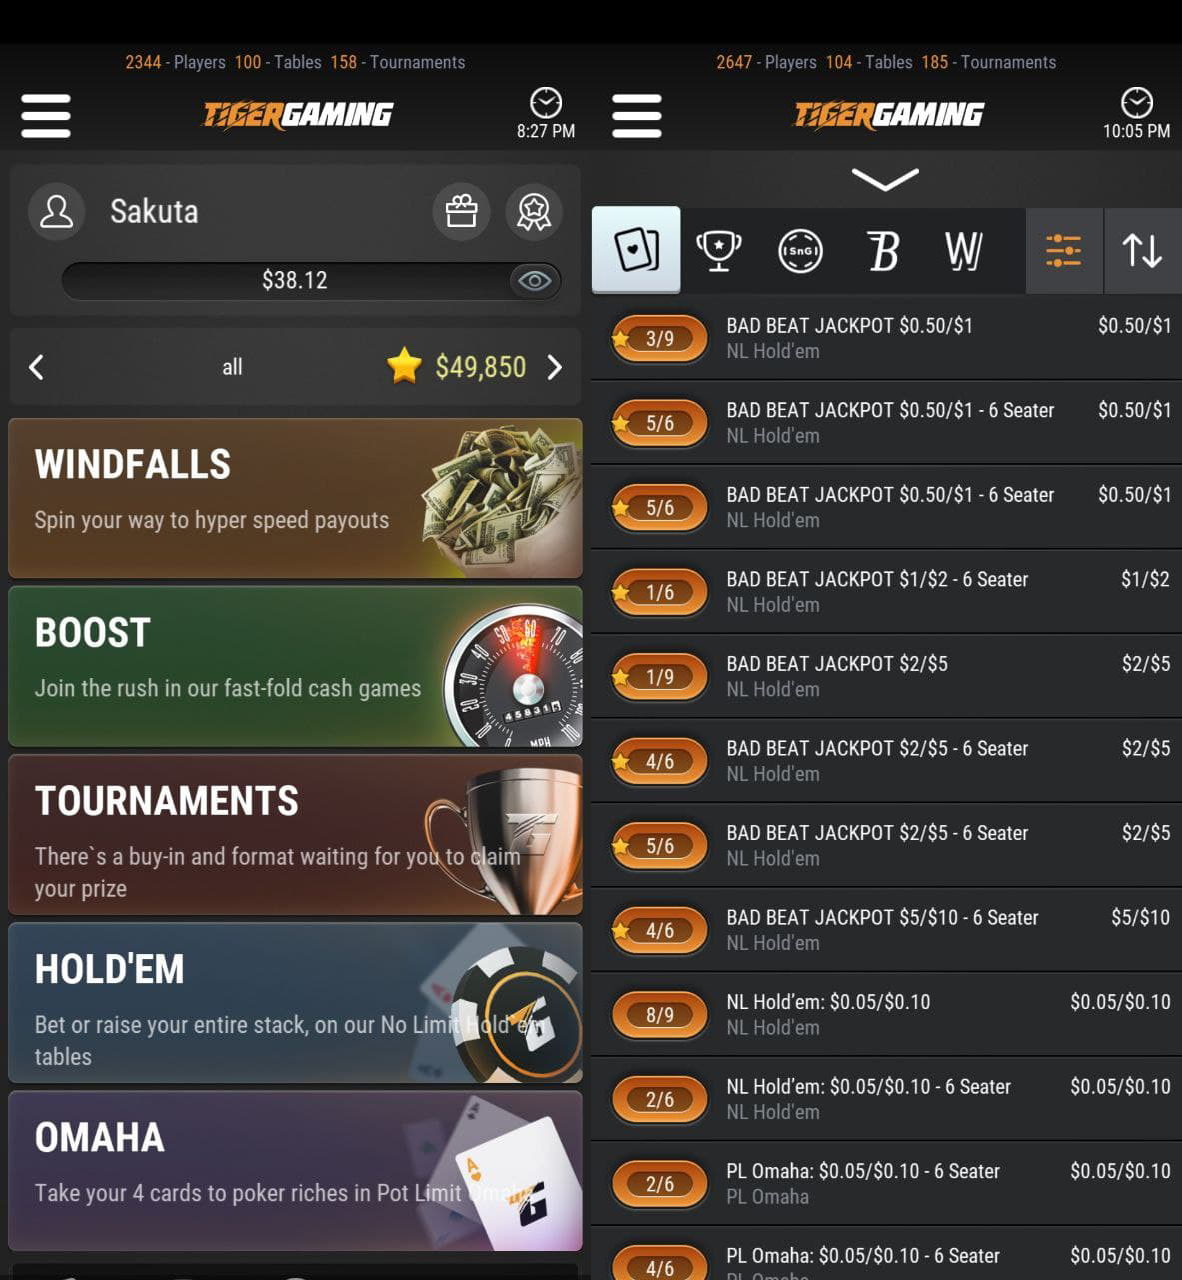 Заглавный экран мобильного приложения TigerGaming на Android